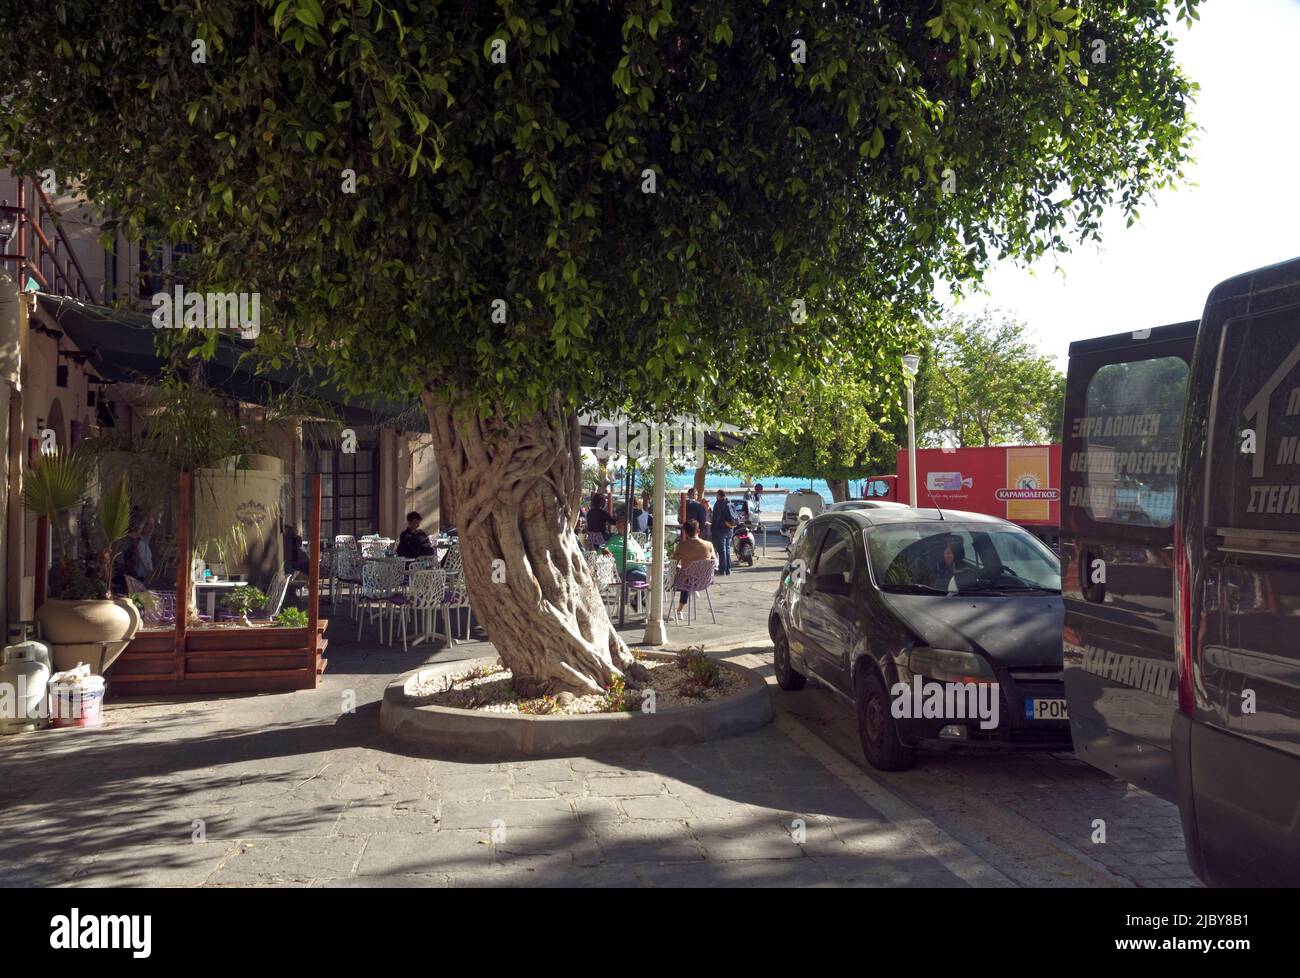 Beau arbre torsadé poussant à travers la chaussée donnant sur un petit café extérieur, ville de Rhodes, île de Rhodes, Grèce, Dodécanèse Banque D'Images